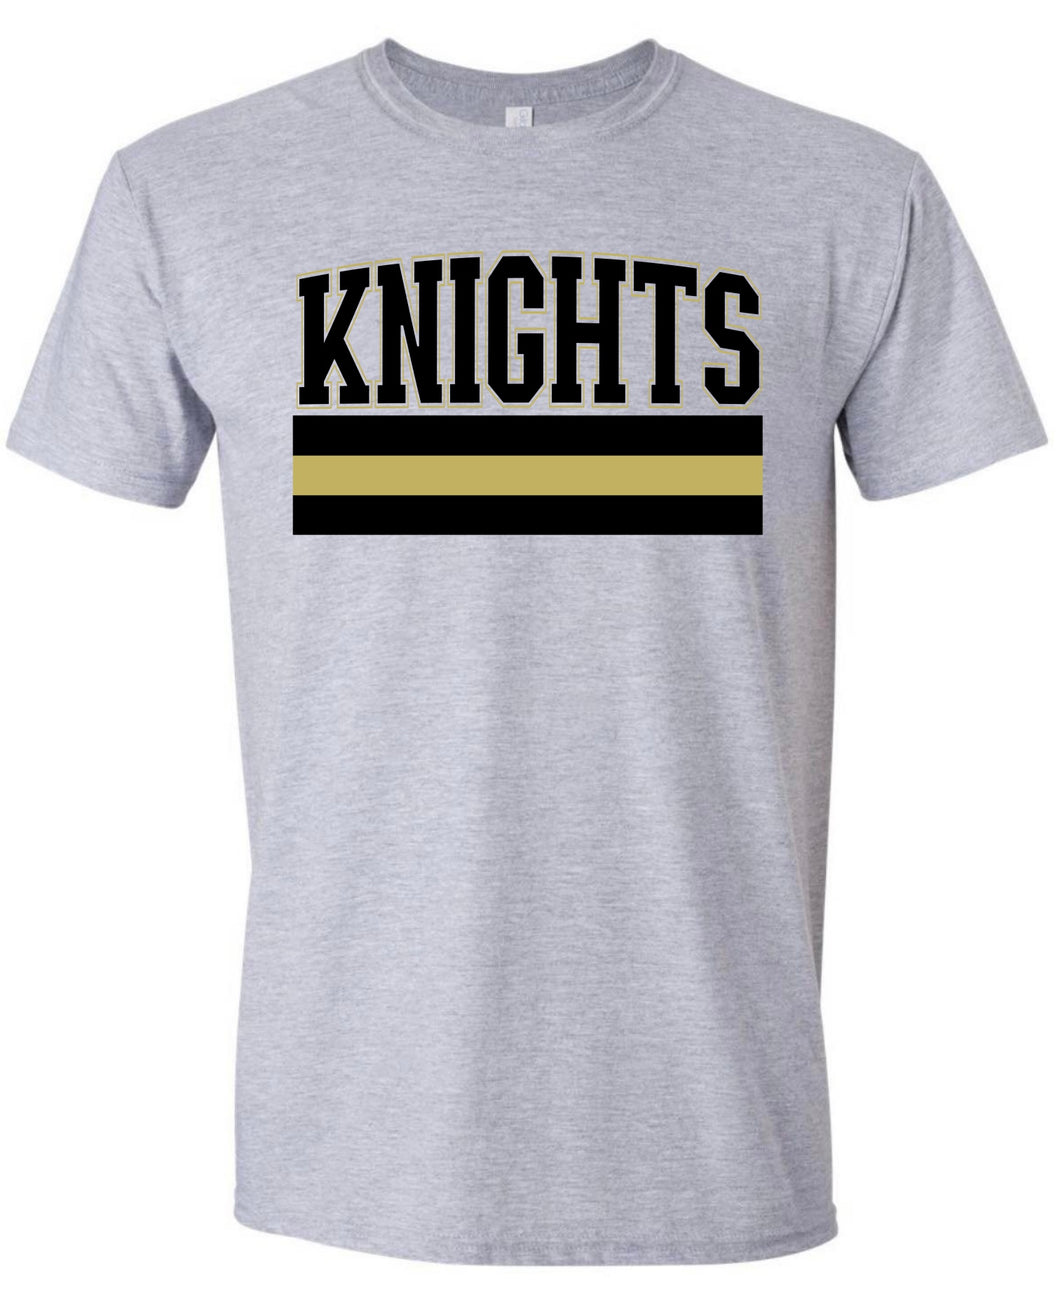 Knights Varsity Lines Tshirt